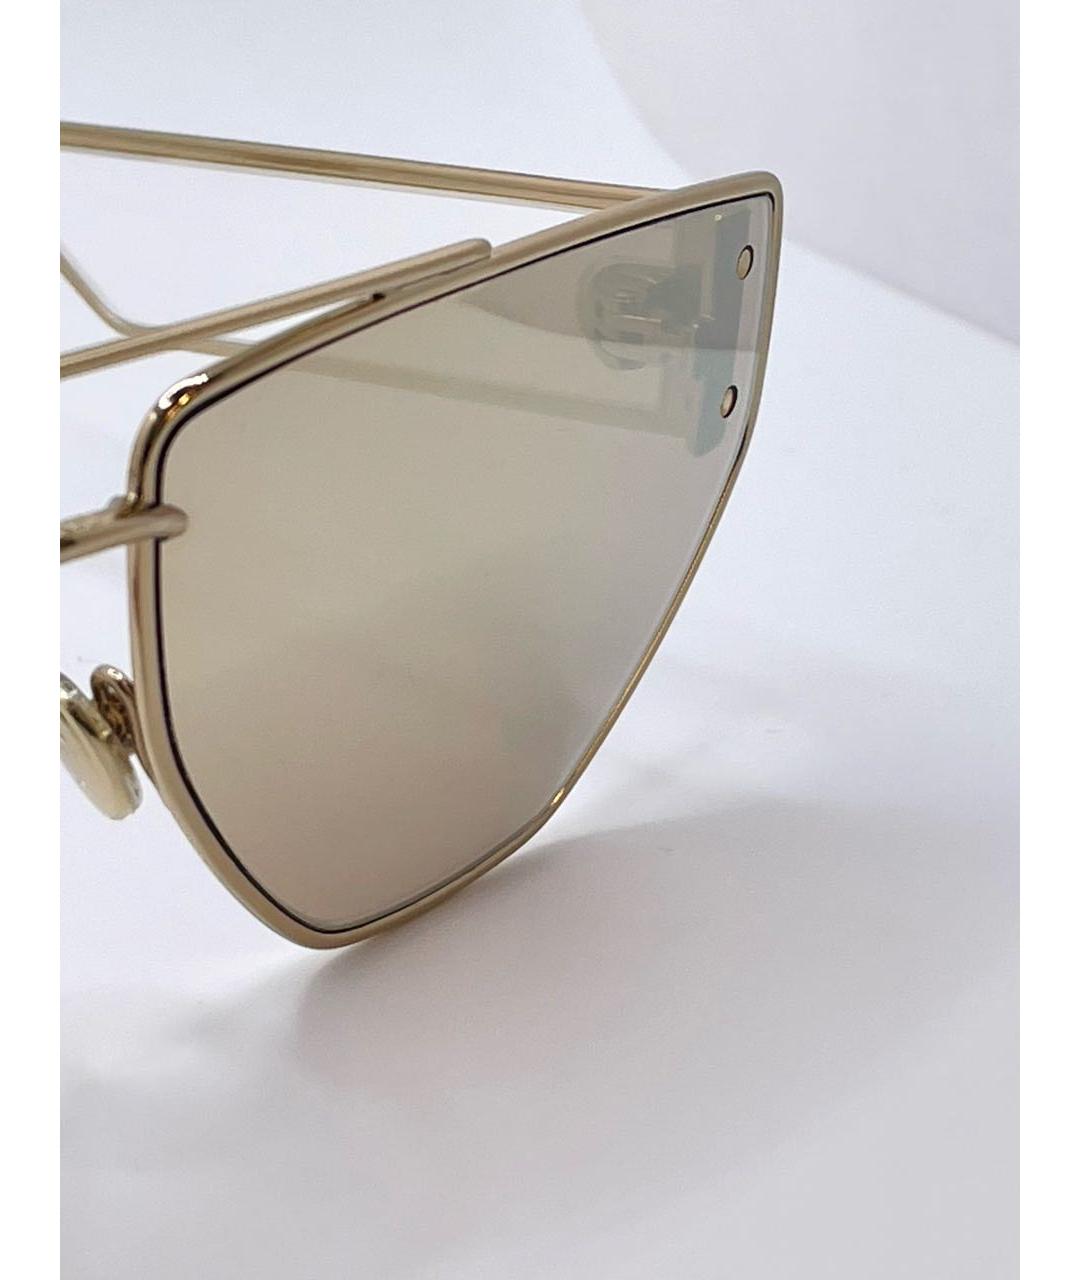 CHRISTIAN DIOR Золотые металлические солнцезащитные очки, фото 3